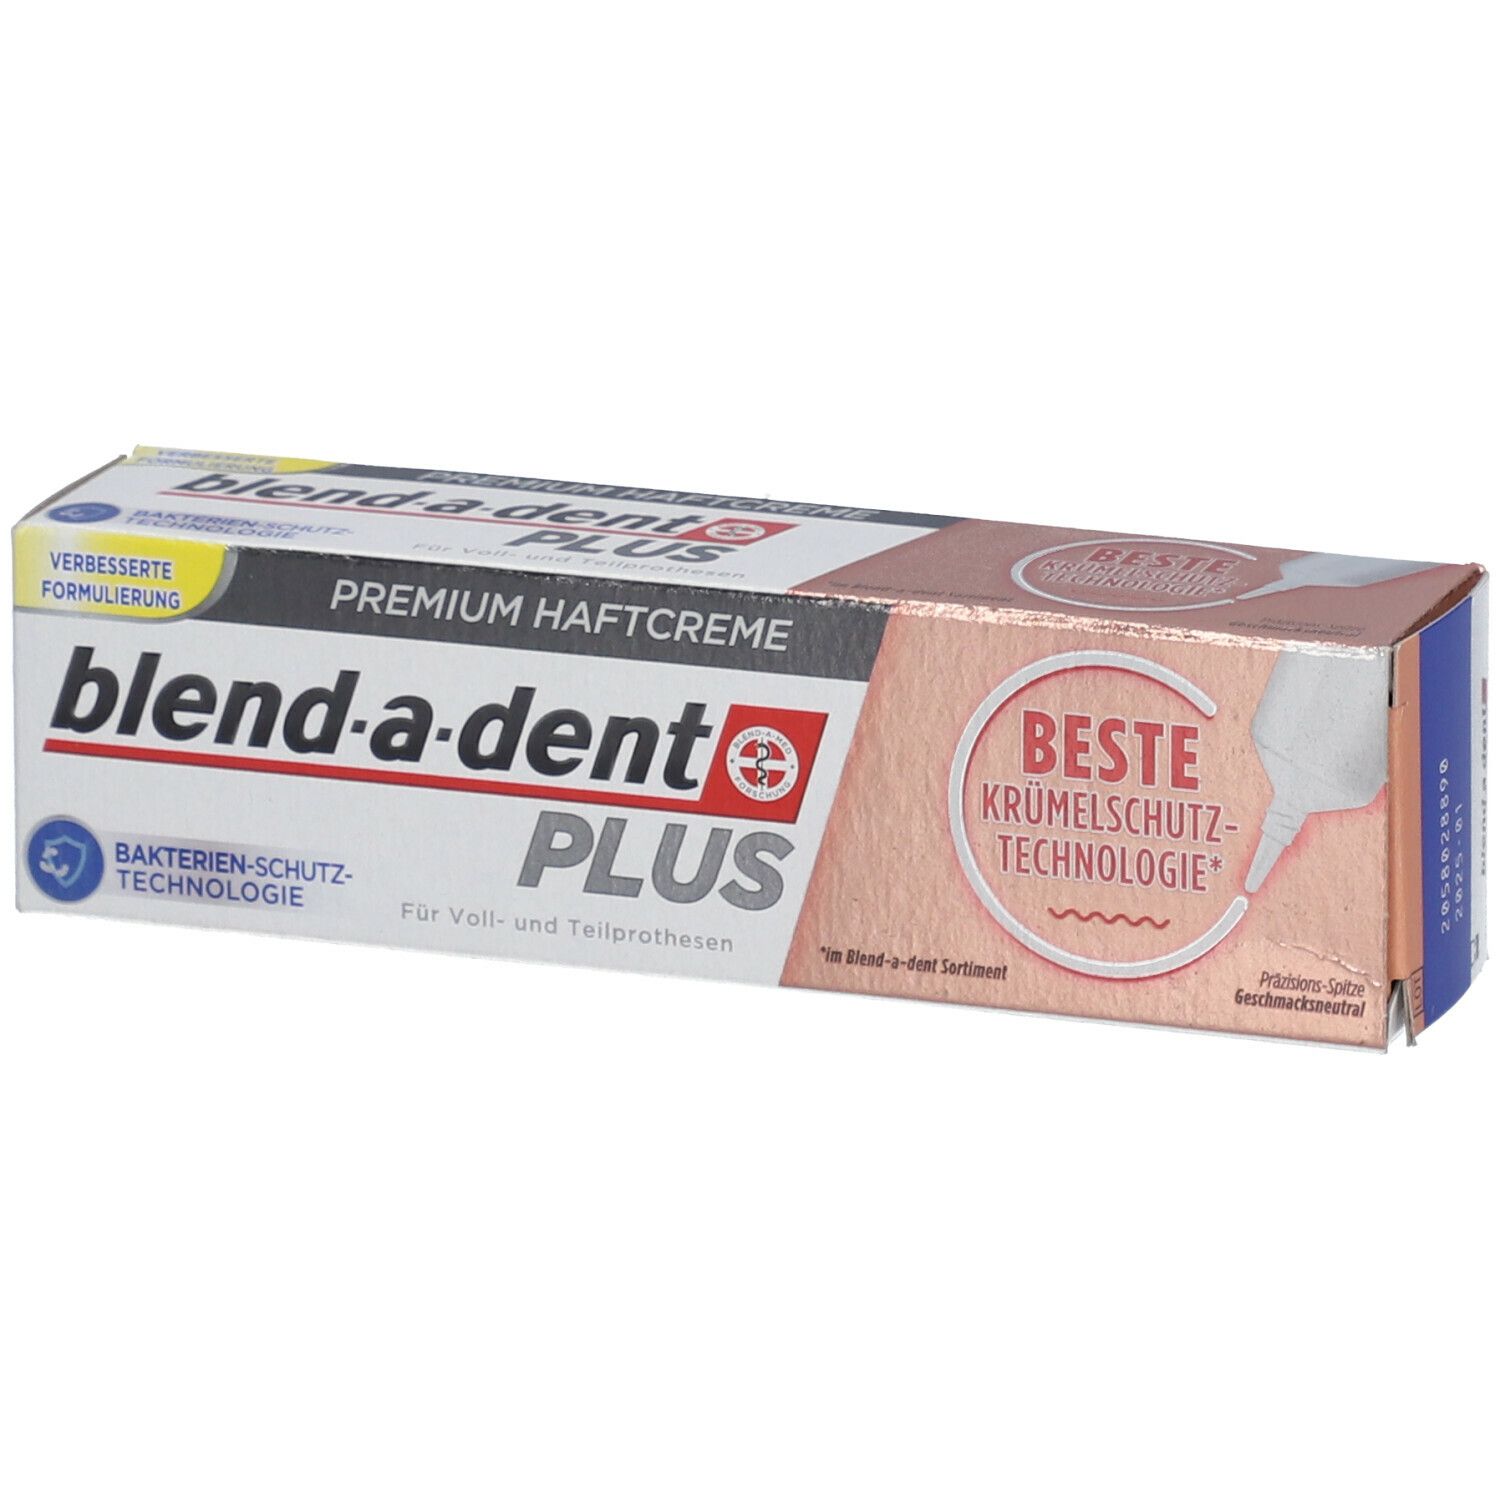 Image of blend-a-dent PLUS Premium Haftcreme Krümelschutz